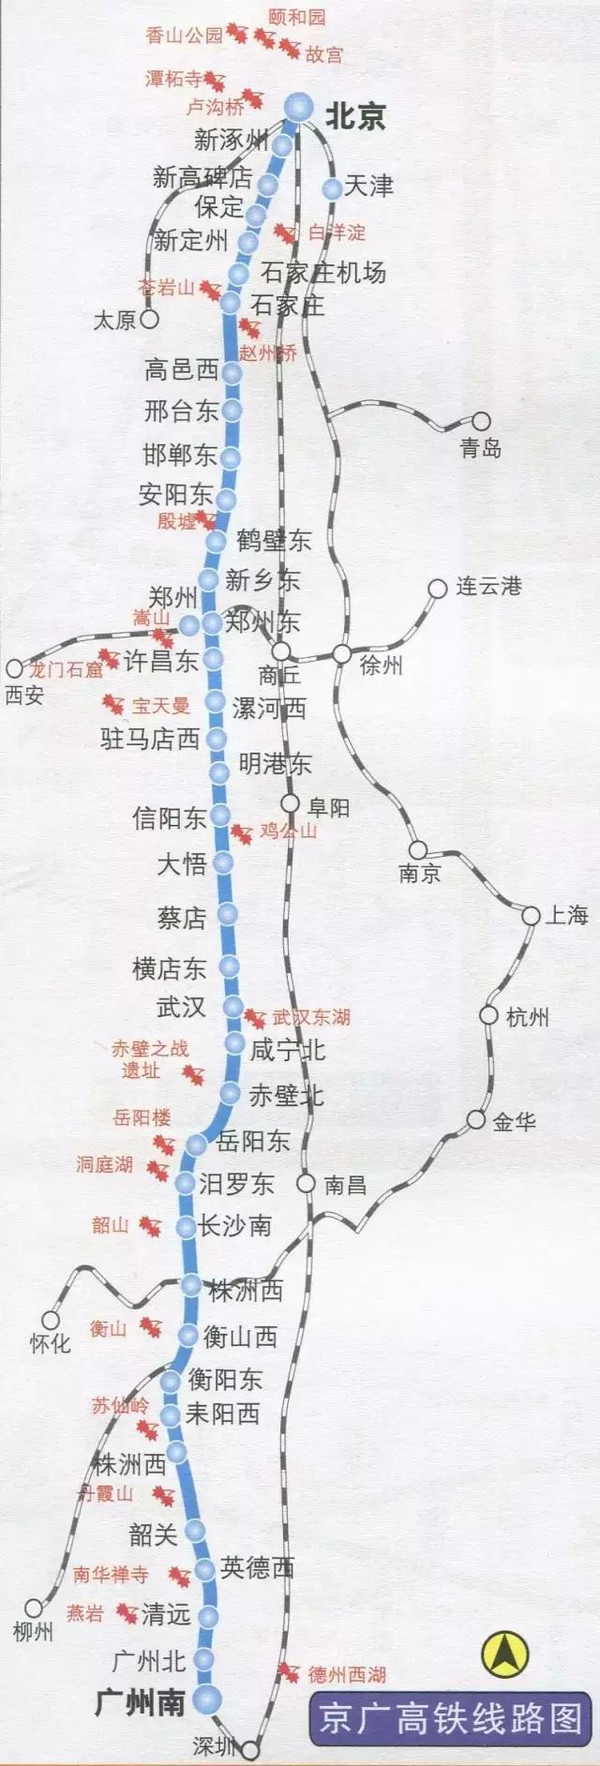 铁路京九线路图图片